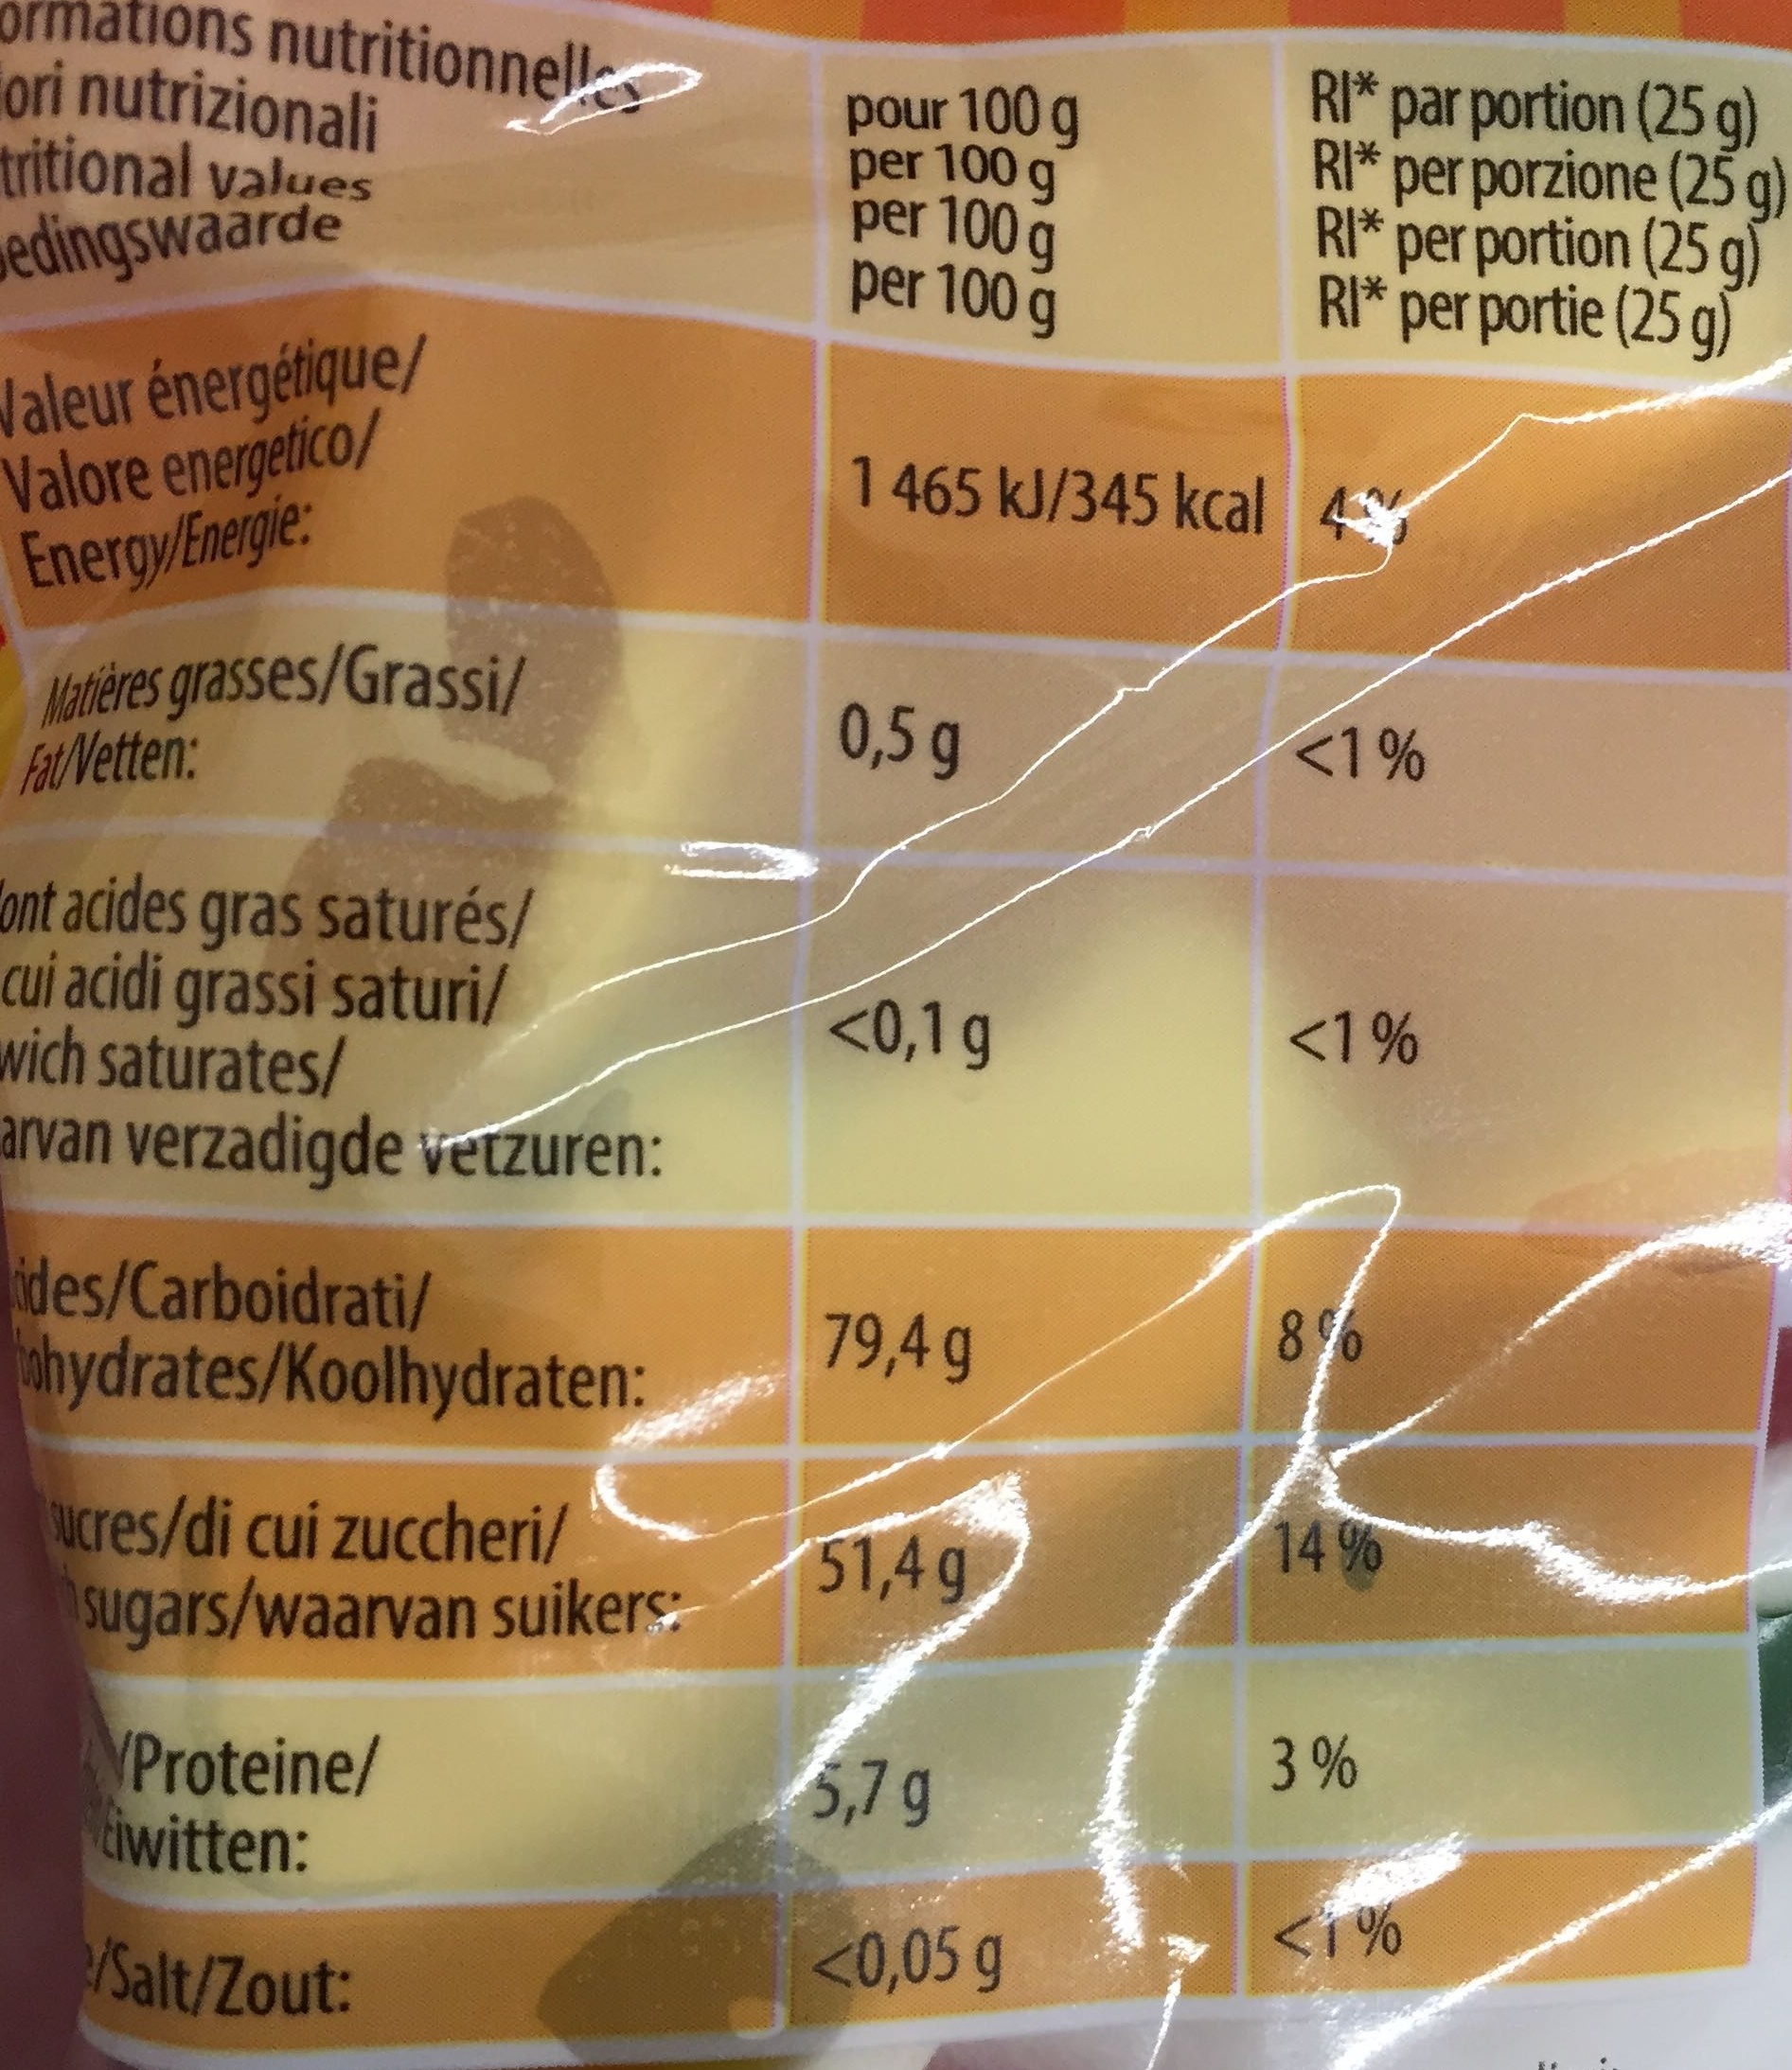 Safari Mix - Confiserie gélifiée fantaisie - Nutrition facts - fr